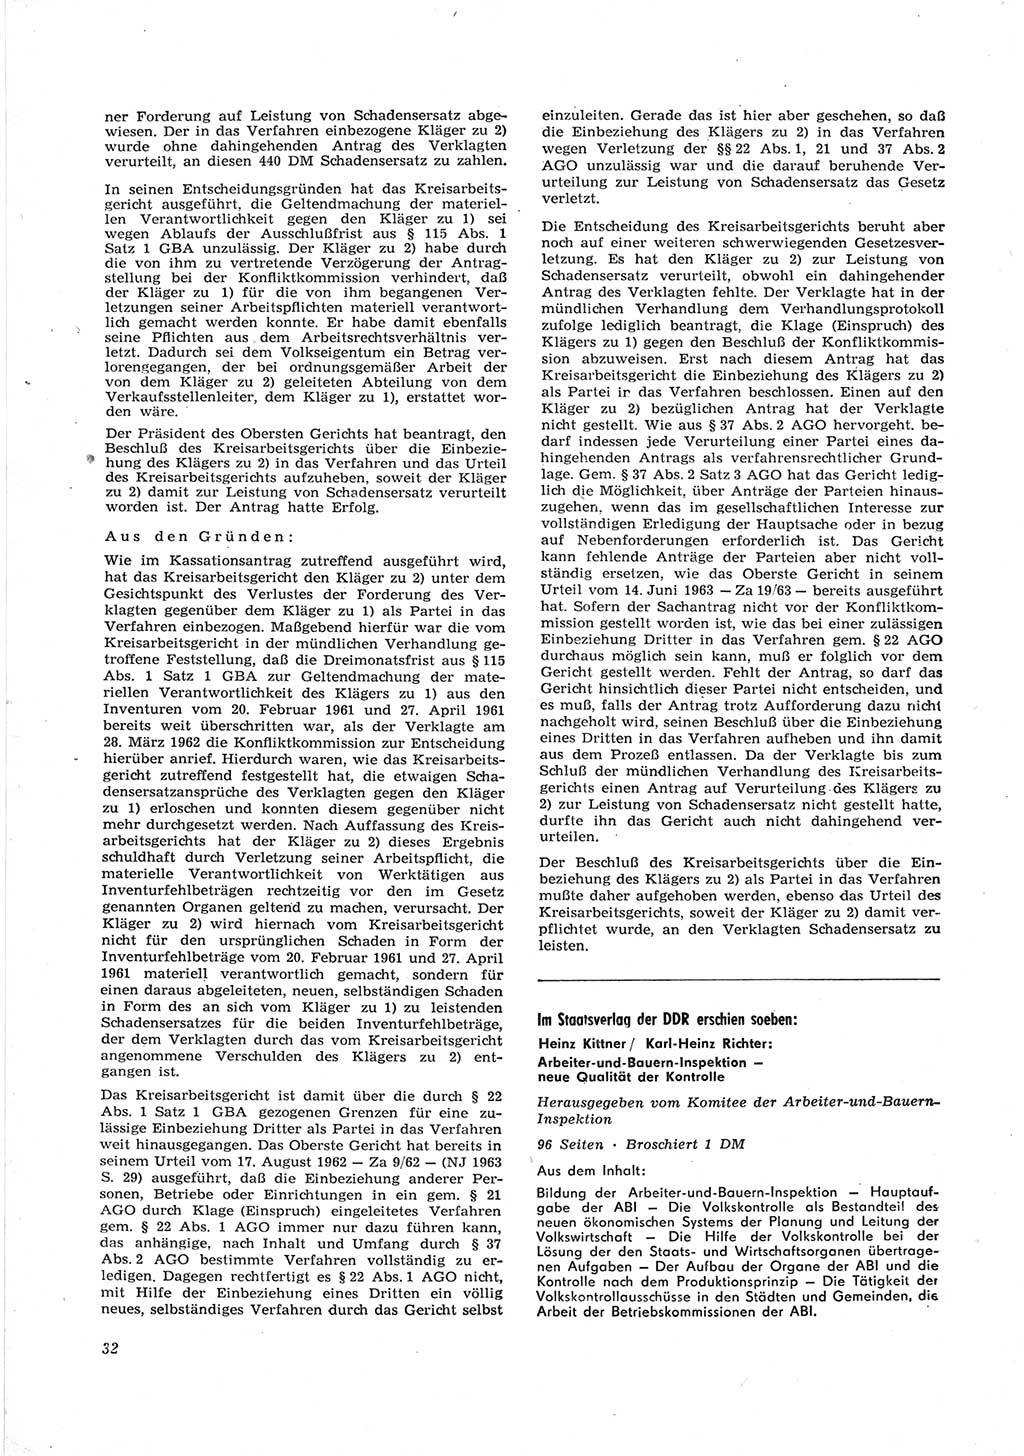 Neue Justiz (NJ), Zeitschrift für Recht und Rechtswissenschaft [Deutsche Demokratische Republik (DDR)], 18. Jahrgang 1964, Seite 32 (NJ DDR 1964, S. 32)